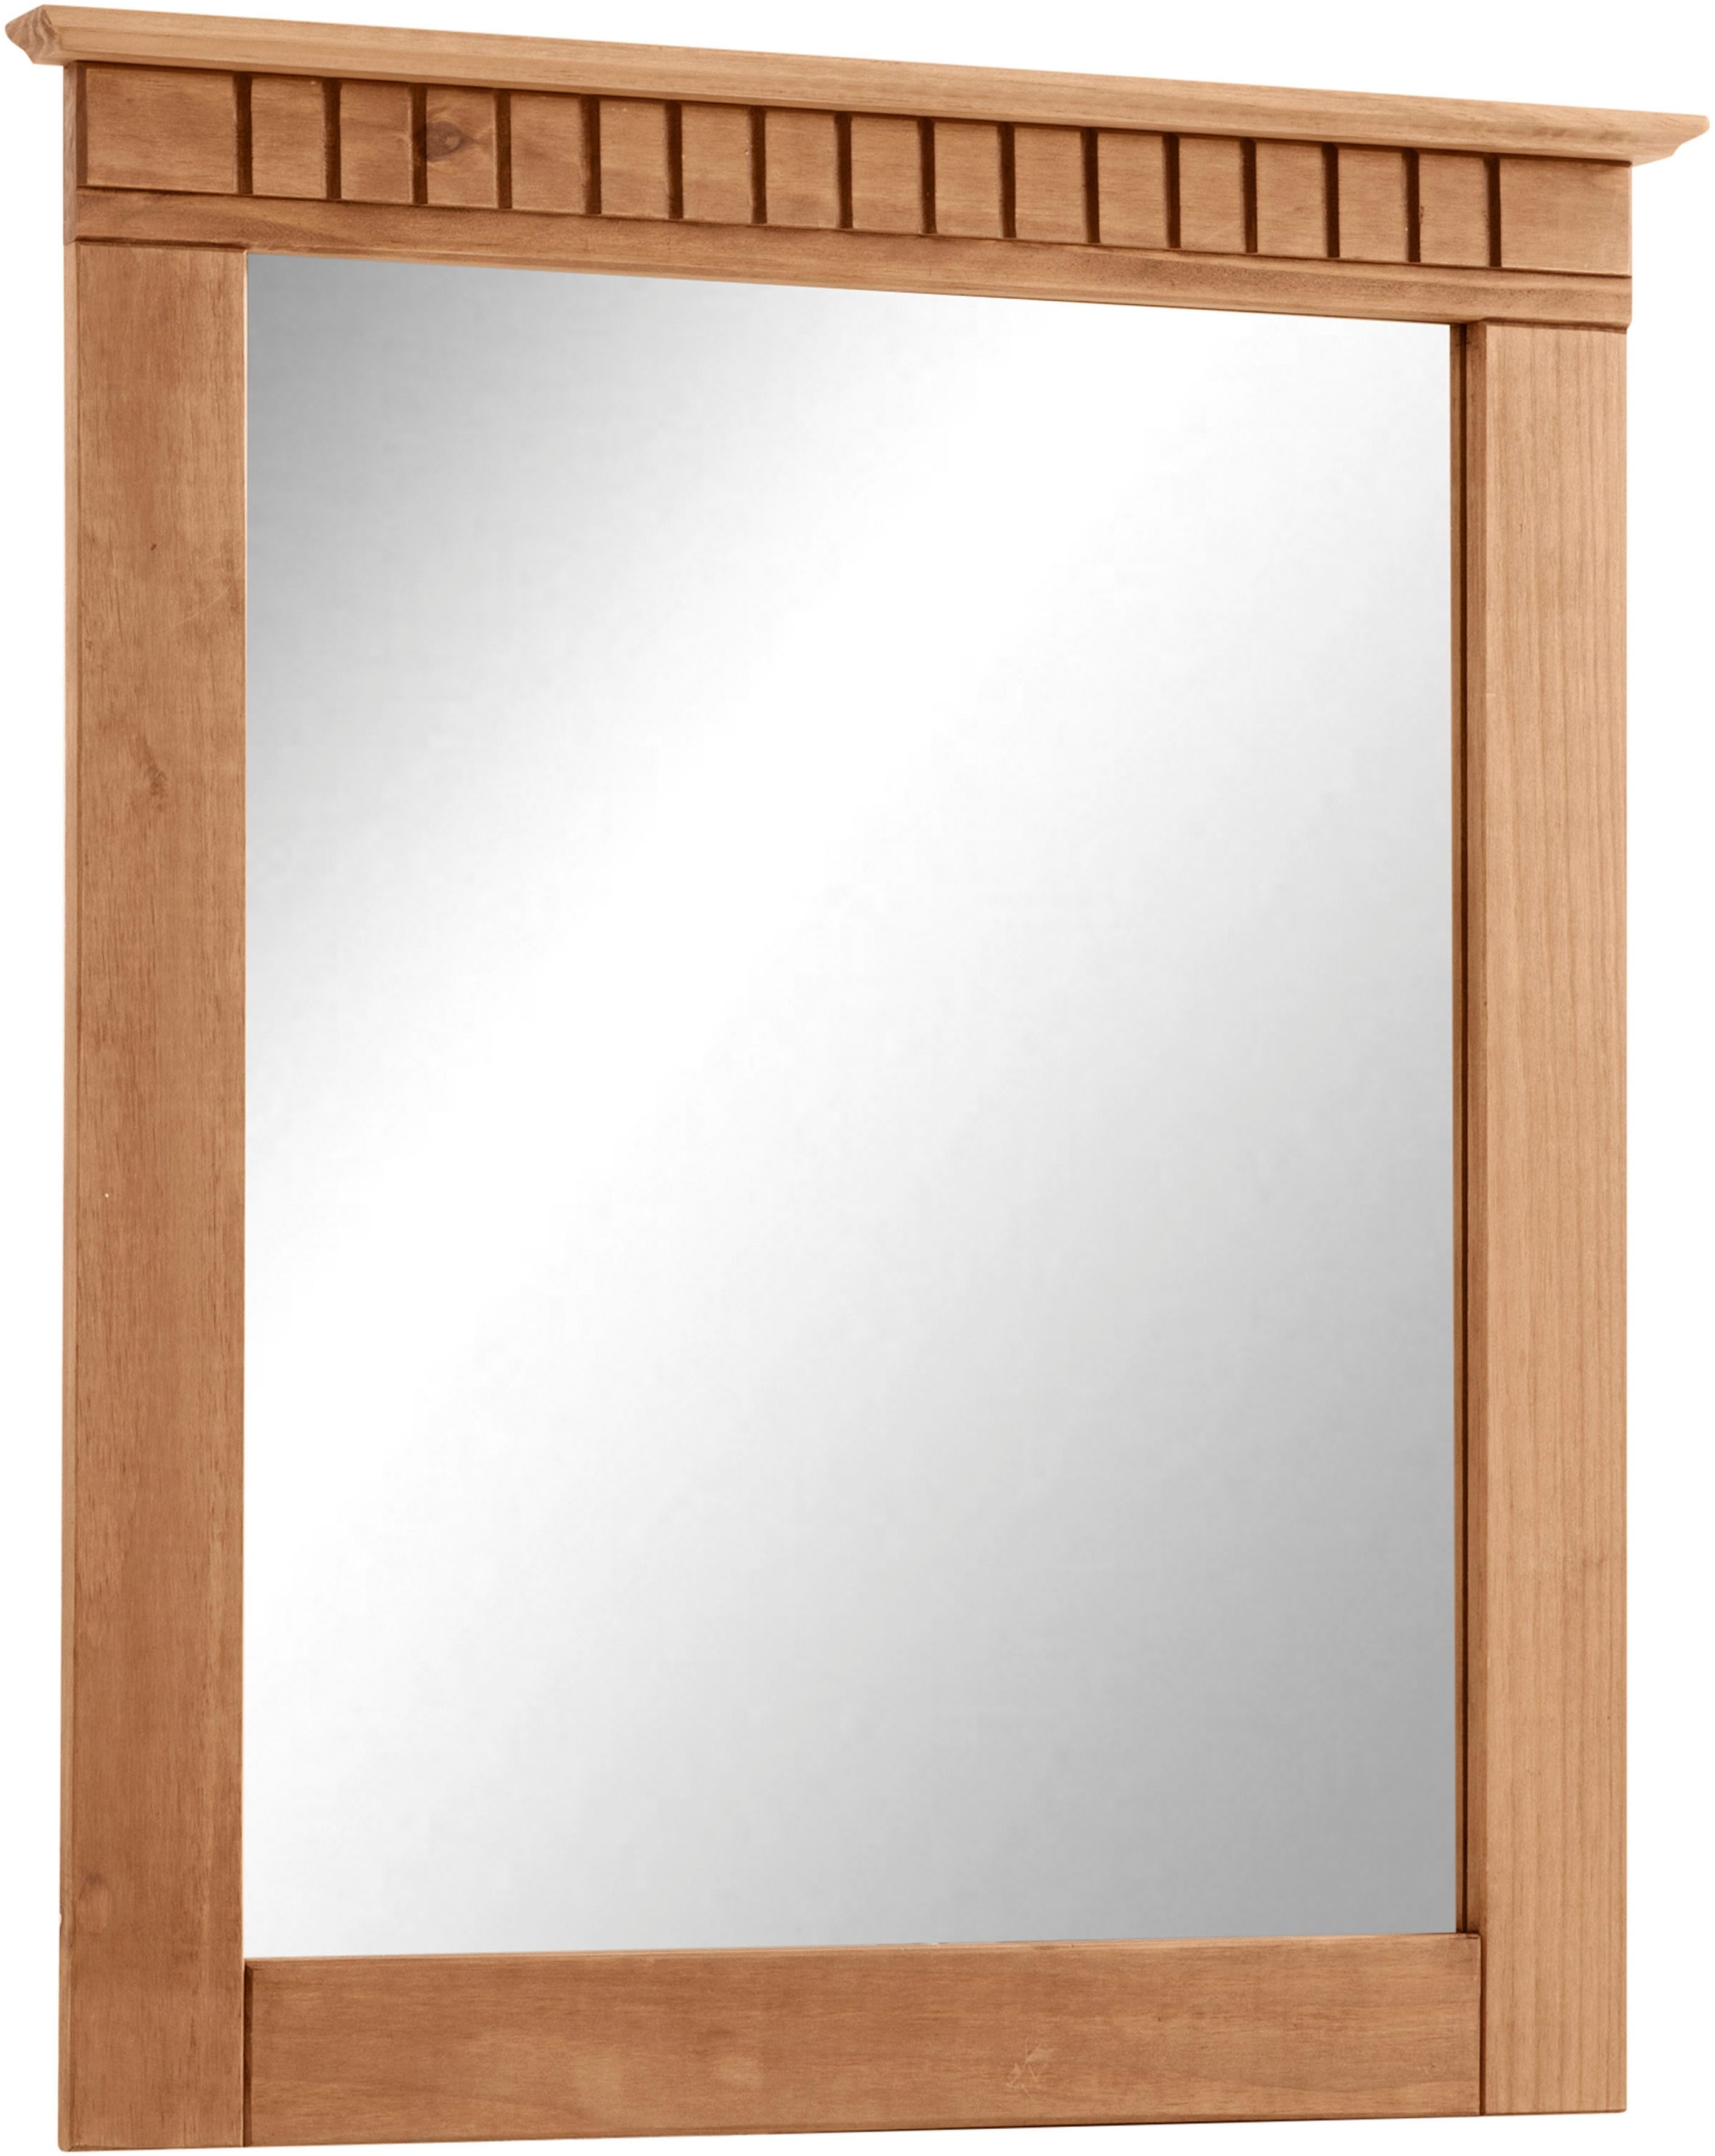 Home affaire Garderobenspiegel Lisa, mit dekorativen Fräsungen, Spiegelfläche ca. 44 x 56 cm